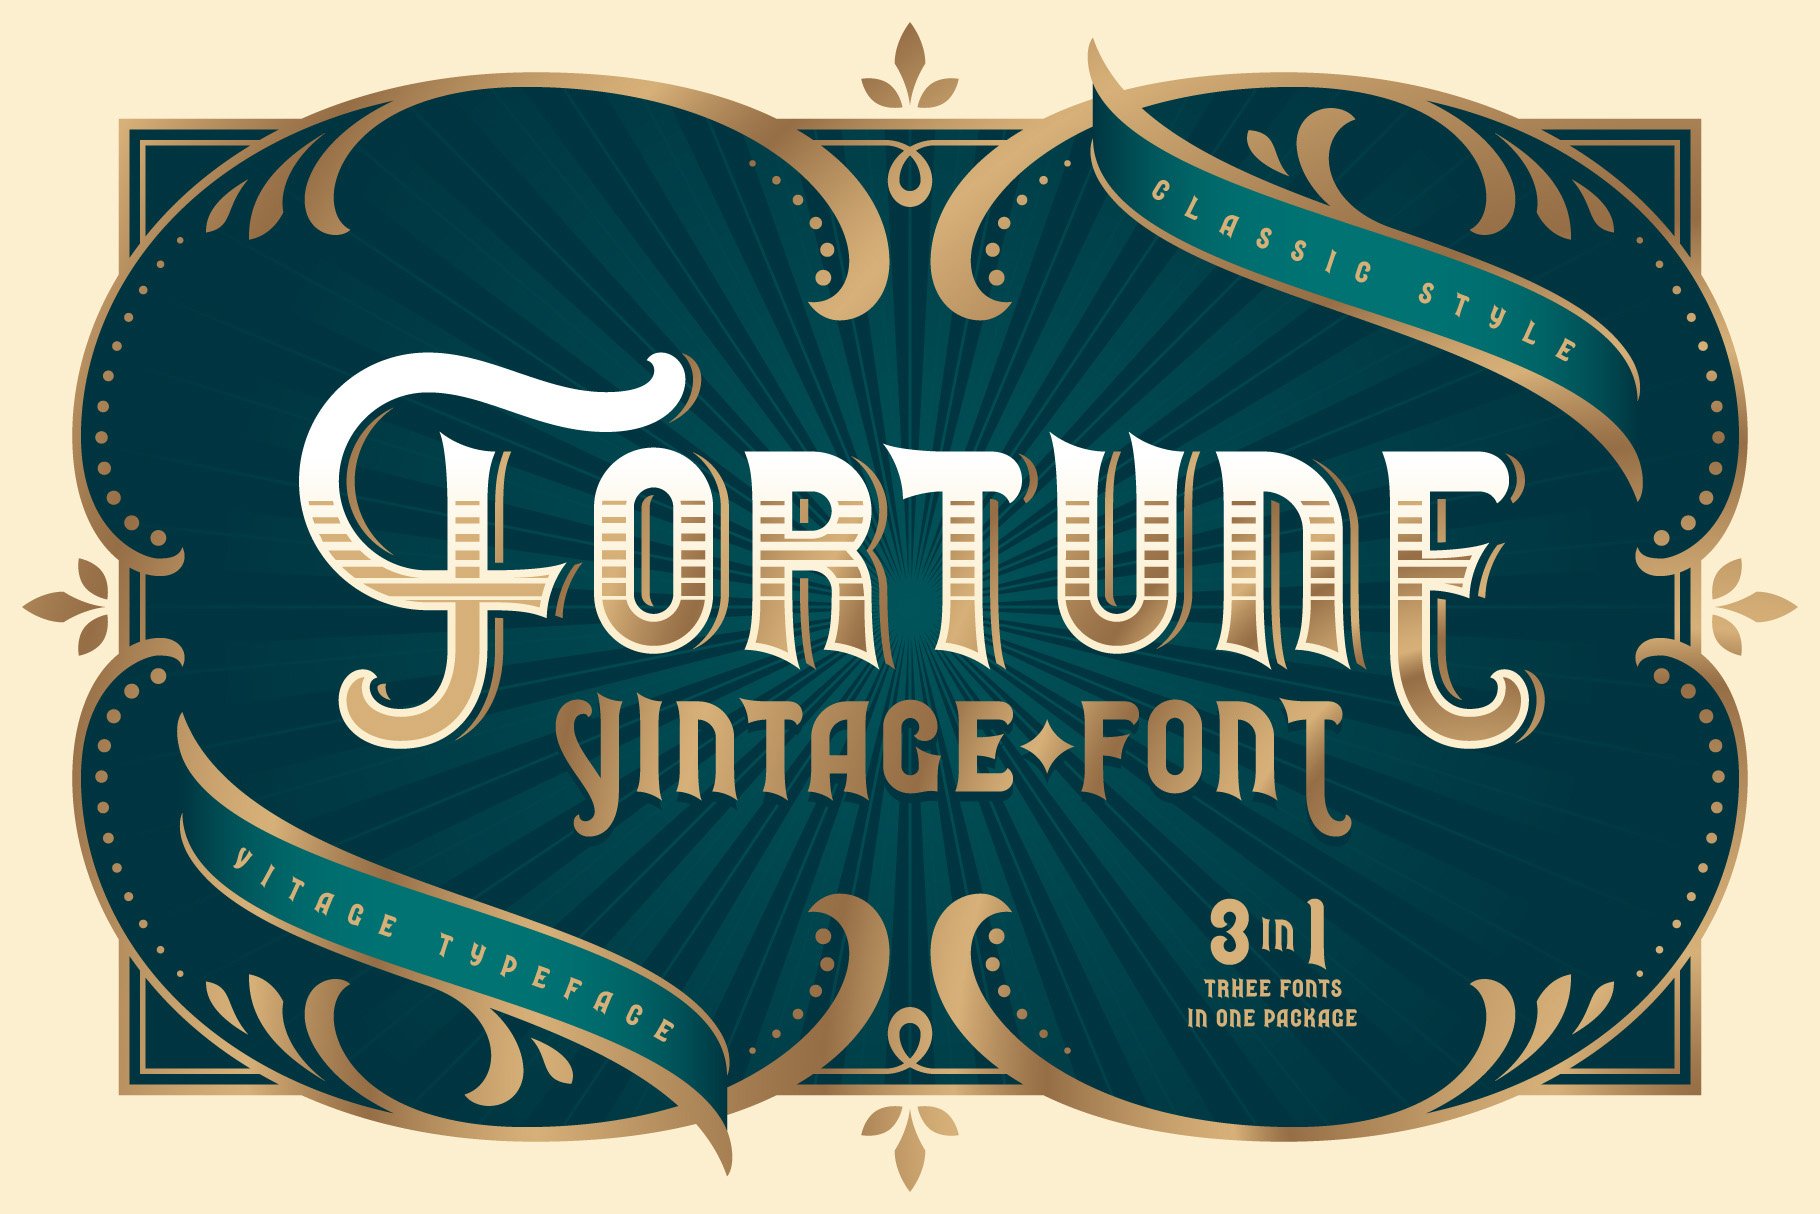 Fortune Vintage Font cover image.